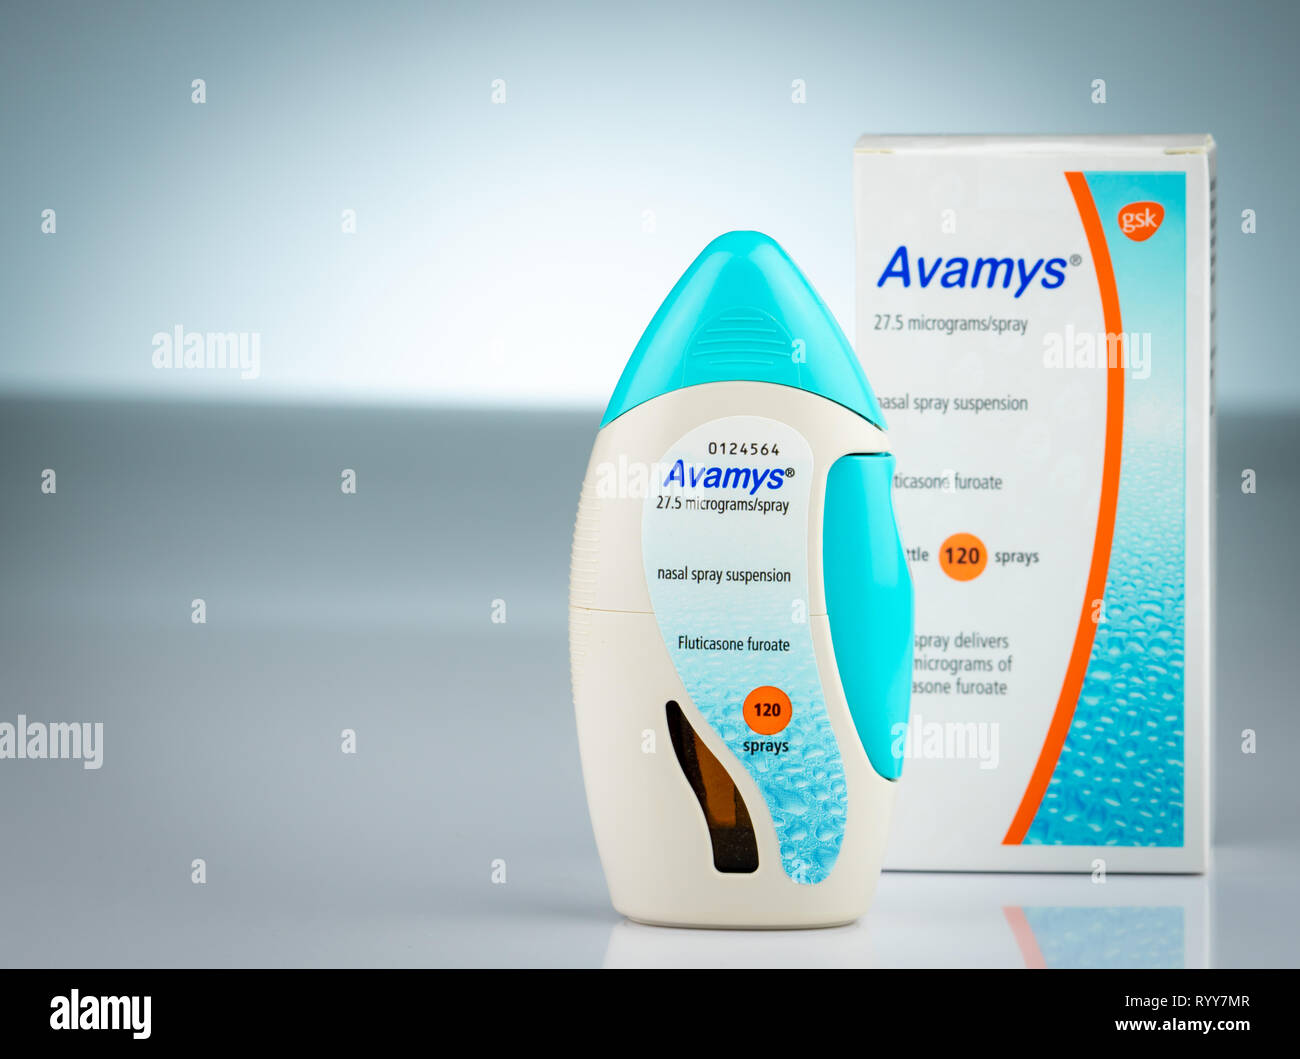 Avamys immagini e fotografie stock ad alta risoluzione - Alamy